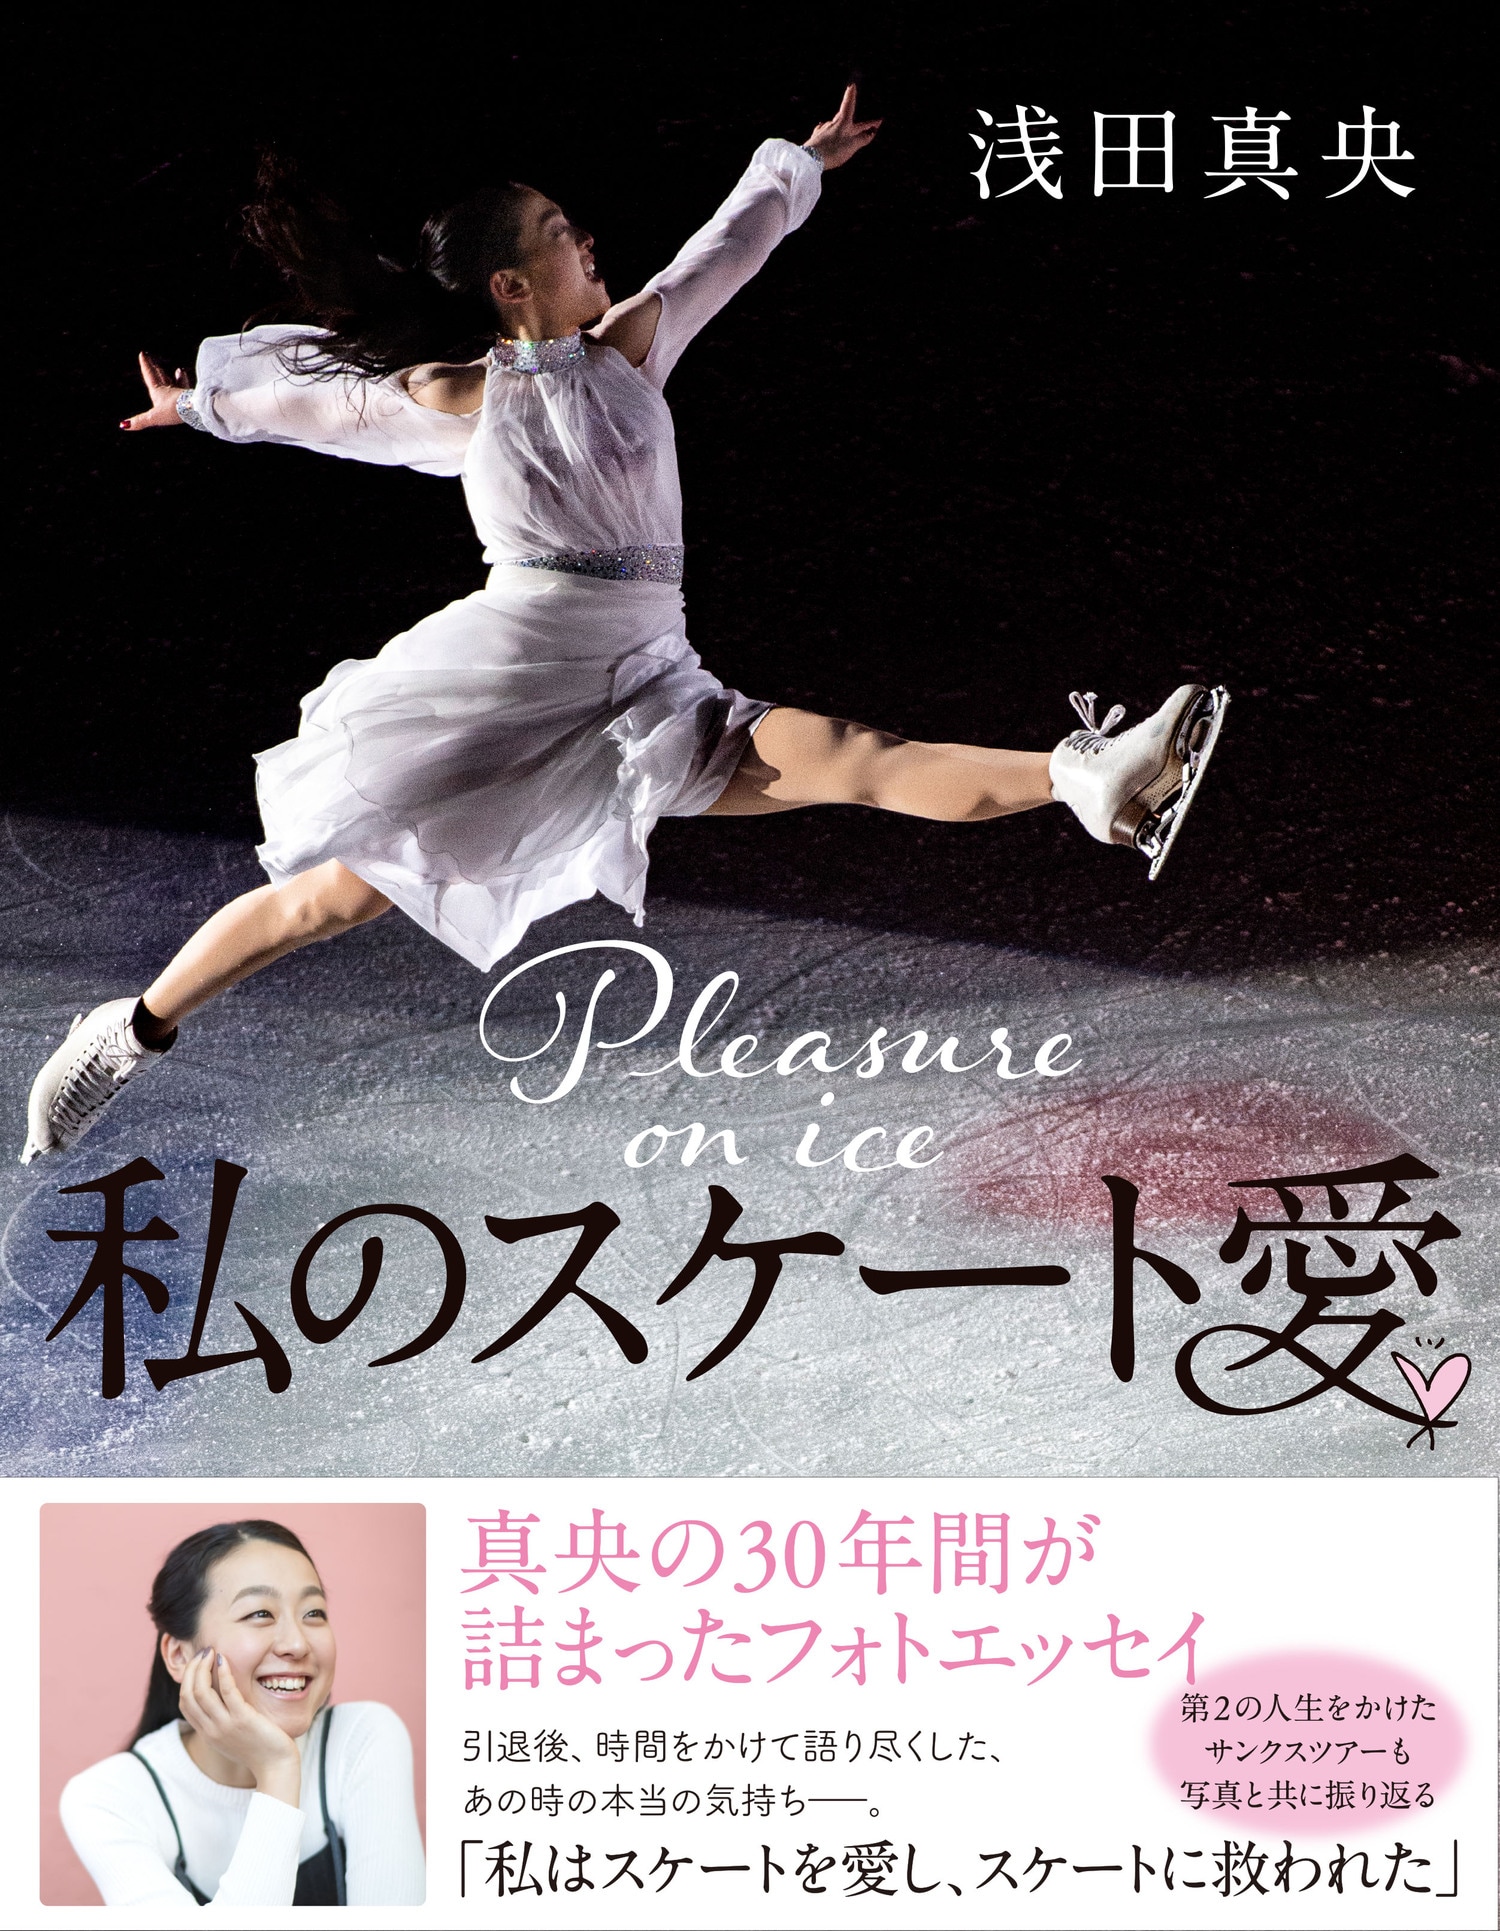 現役中には語らなかったキム・ヨナ、母、将来…。浅田真央の30年が詰まった一冊『私のスケート愛』ほか